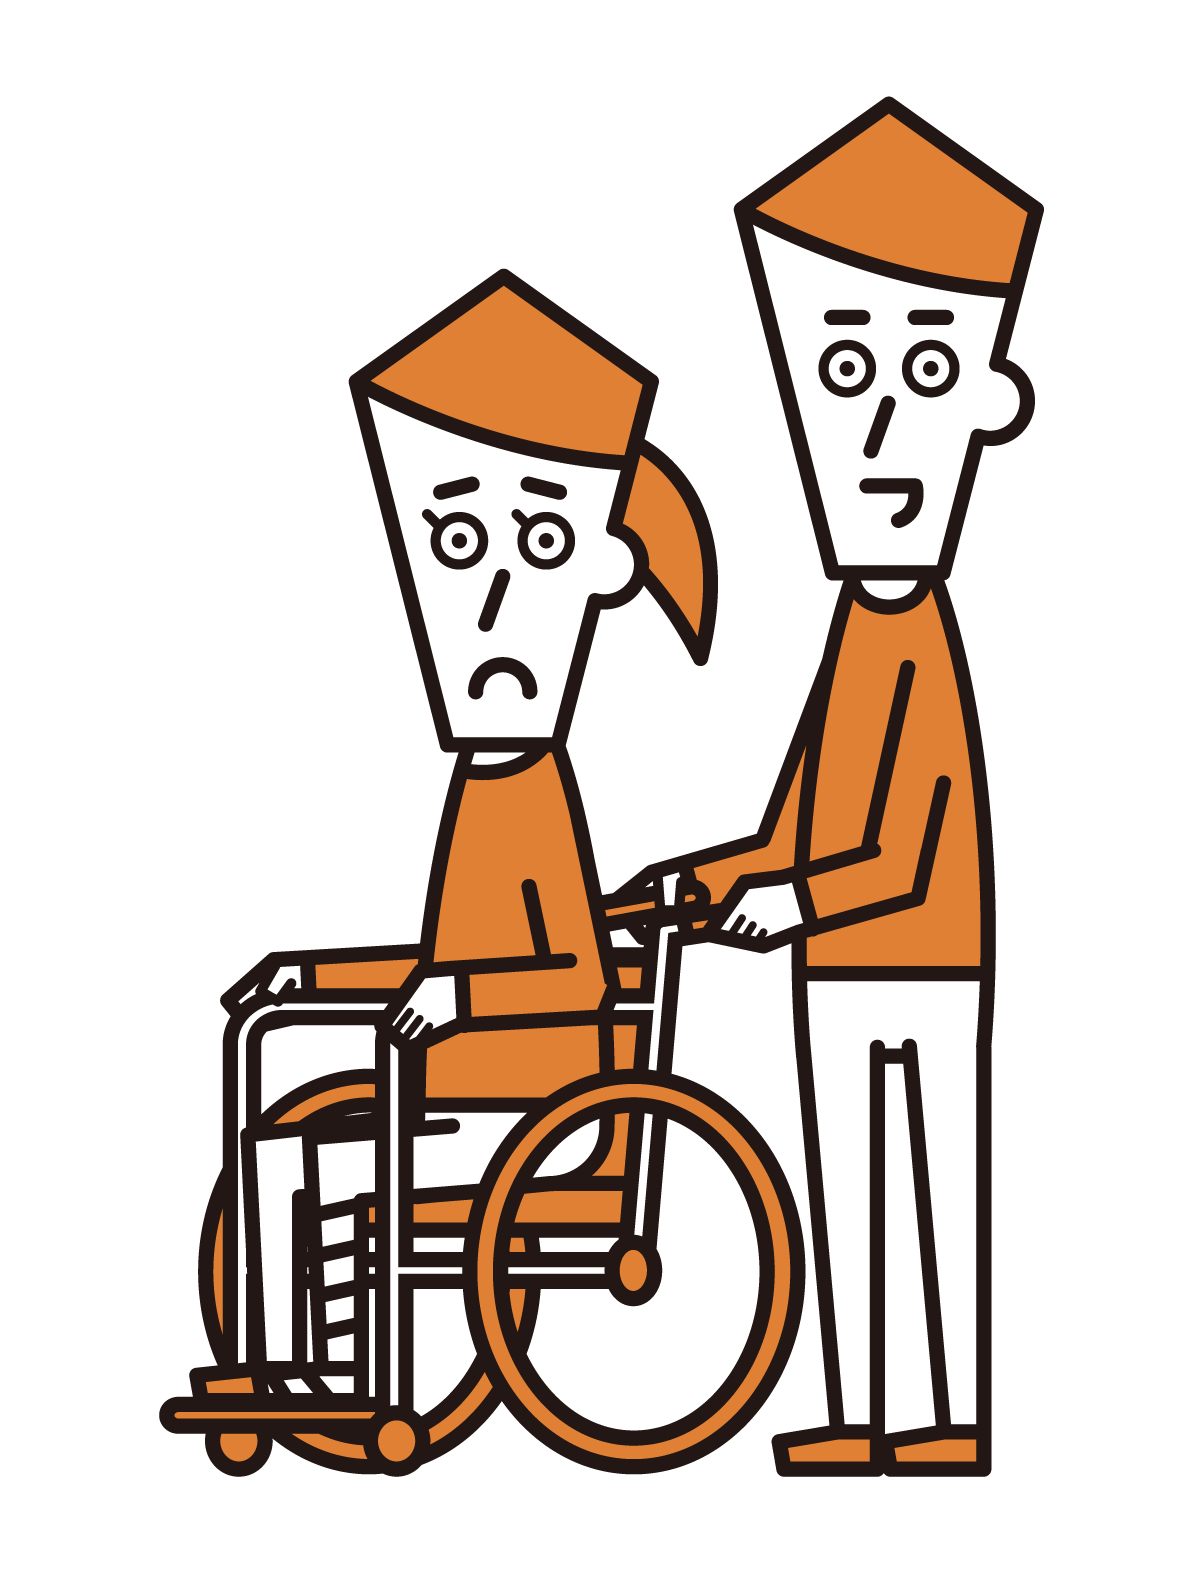 다리 골절로 휠체어에 앉아있는 사람 (여성)의 그림